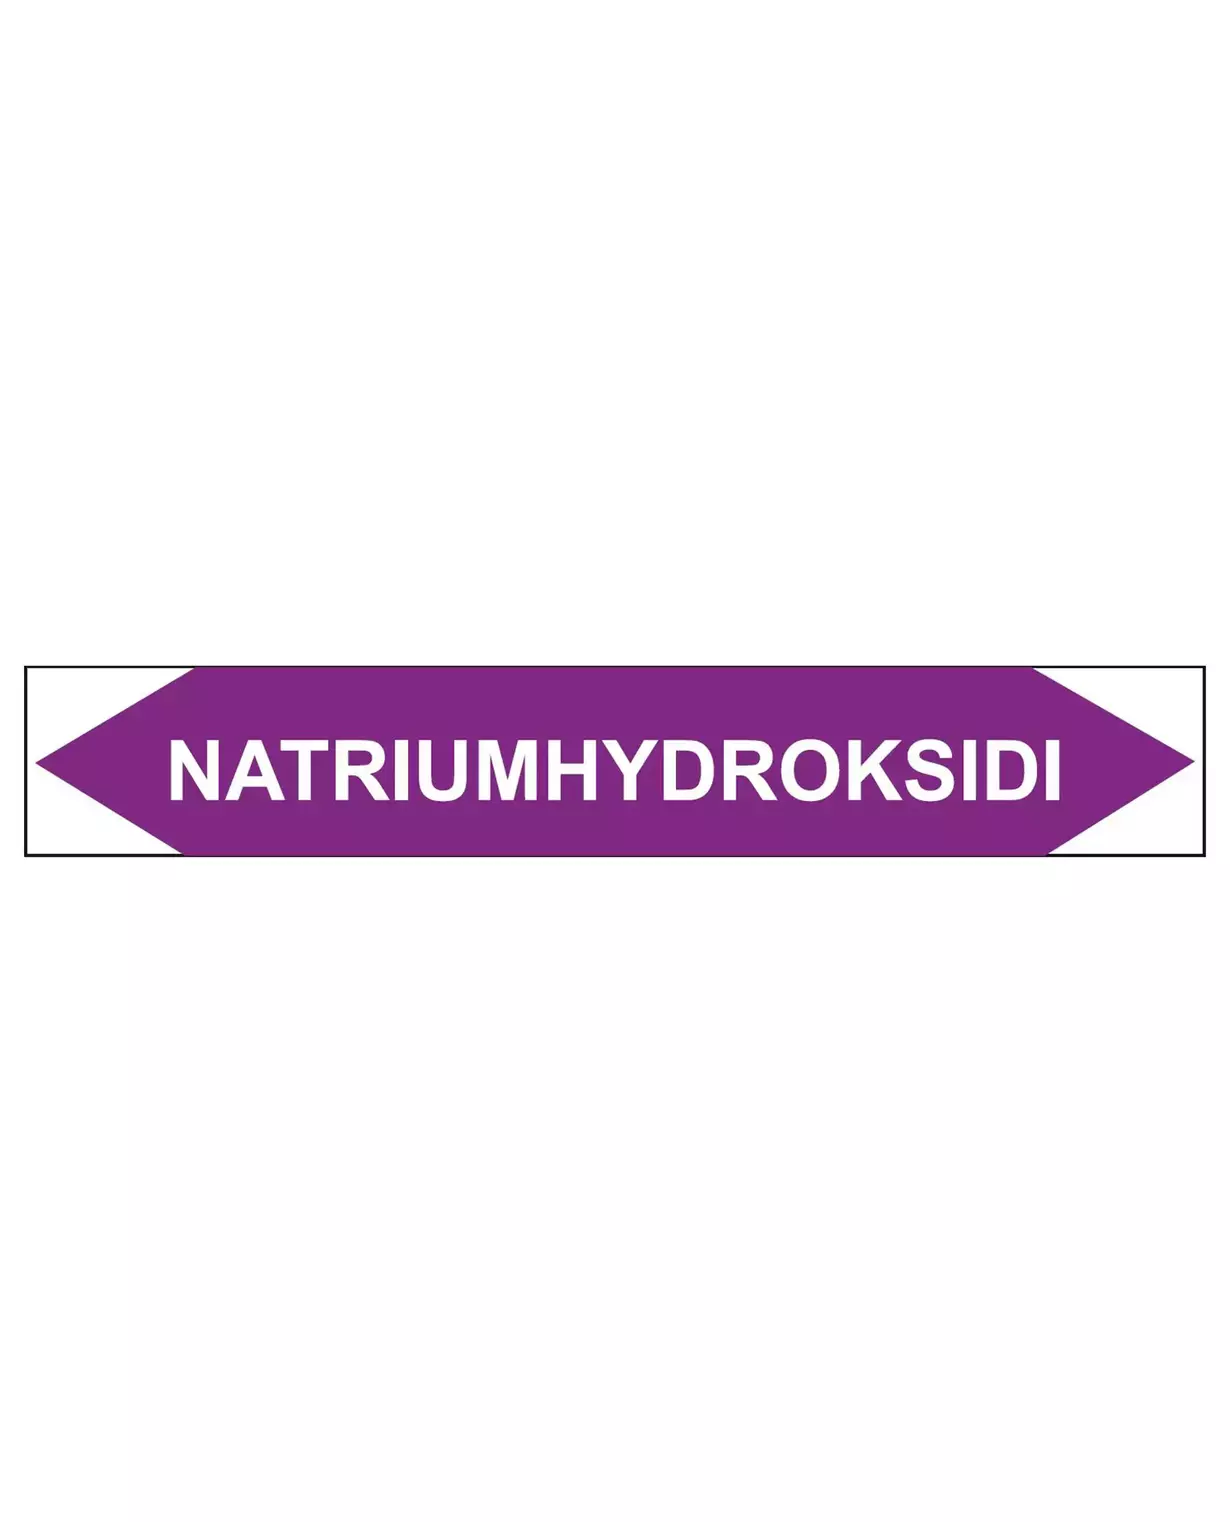 Natriumhydroksidi, 160x25 mm